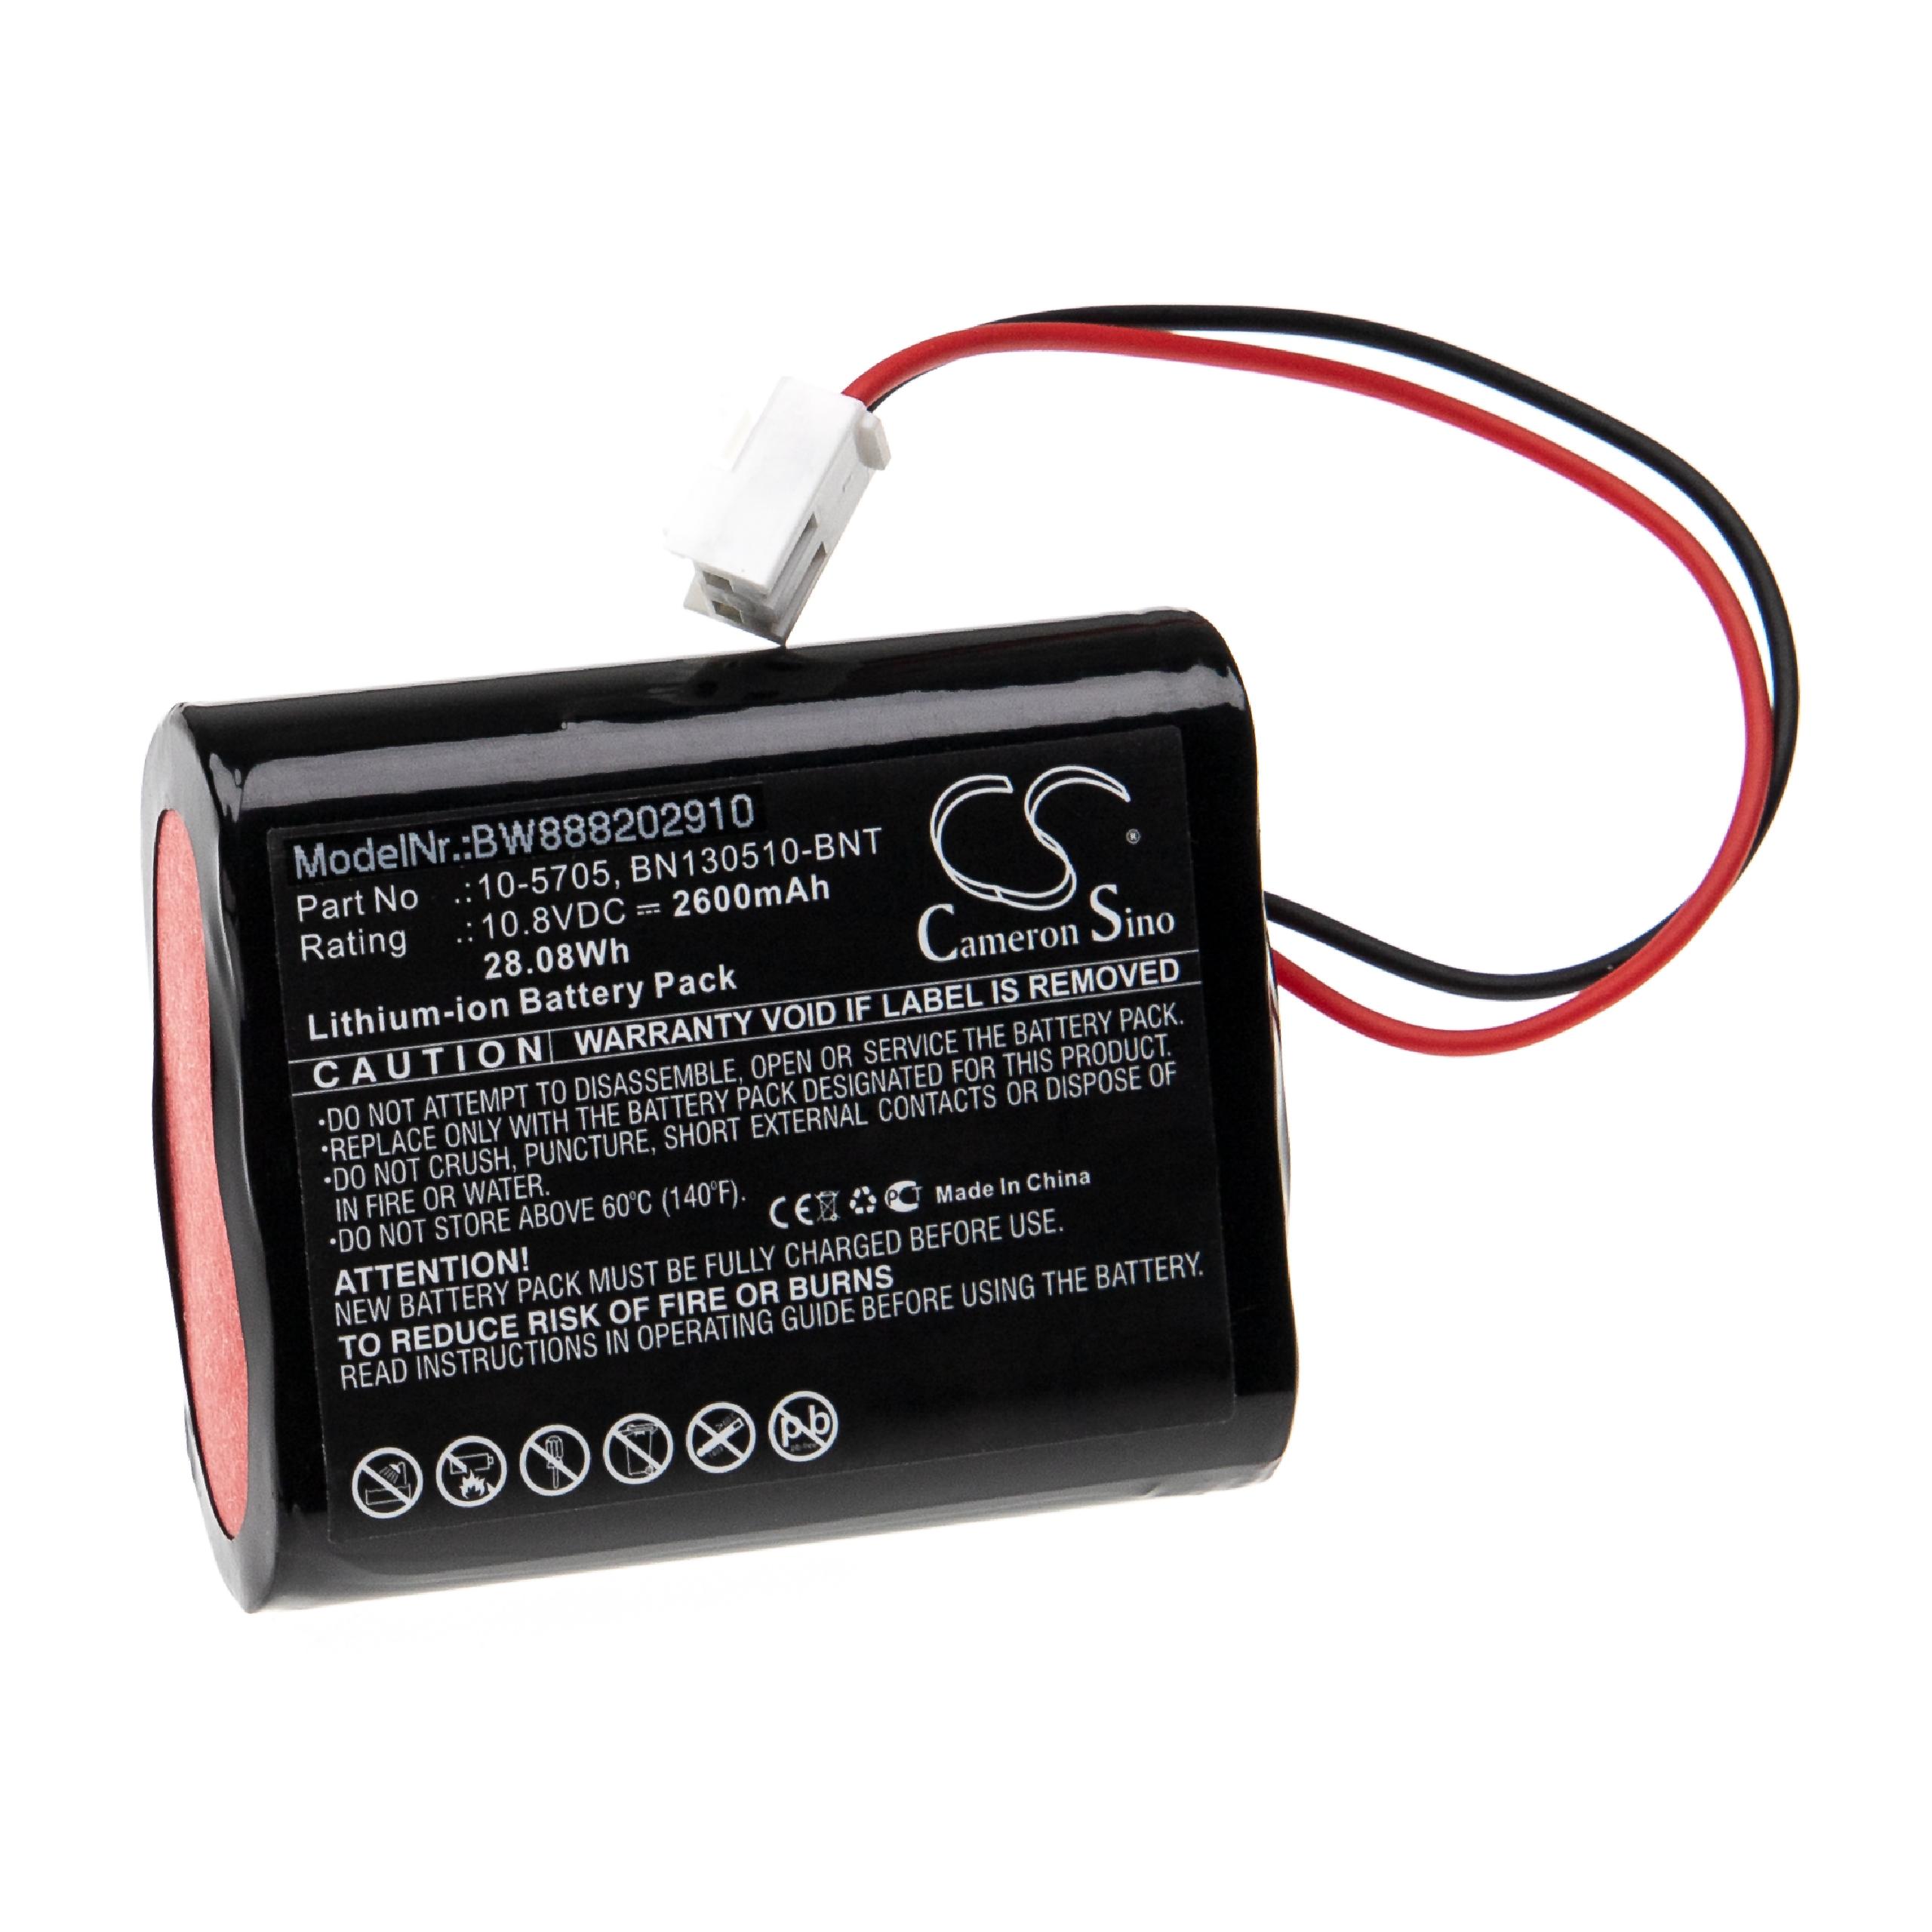 Batterie remplace Bionet 10-5705, BN130510-BNT pour appareil médical - 2600mAh 10,8V Li-ion